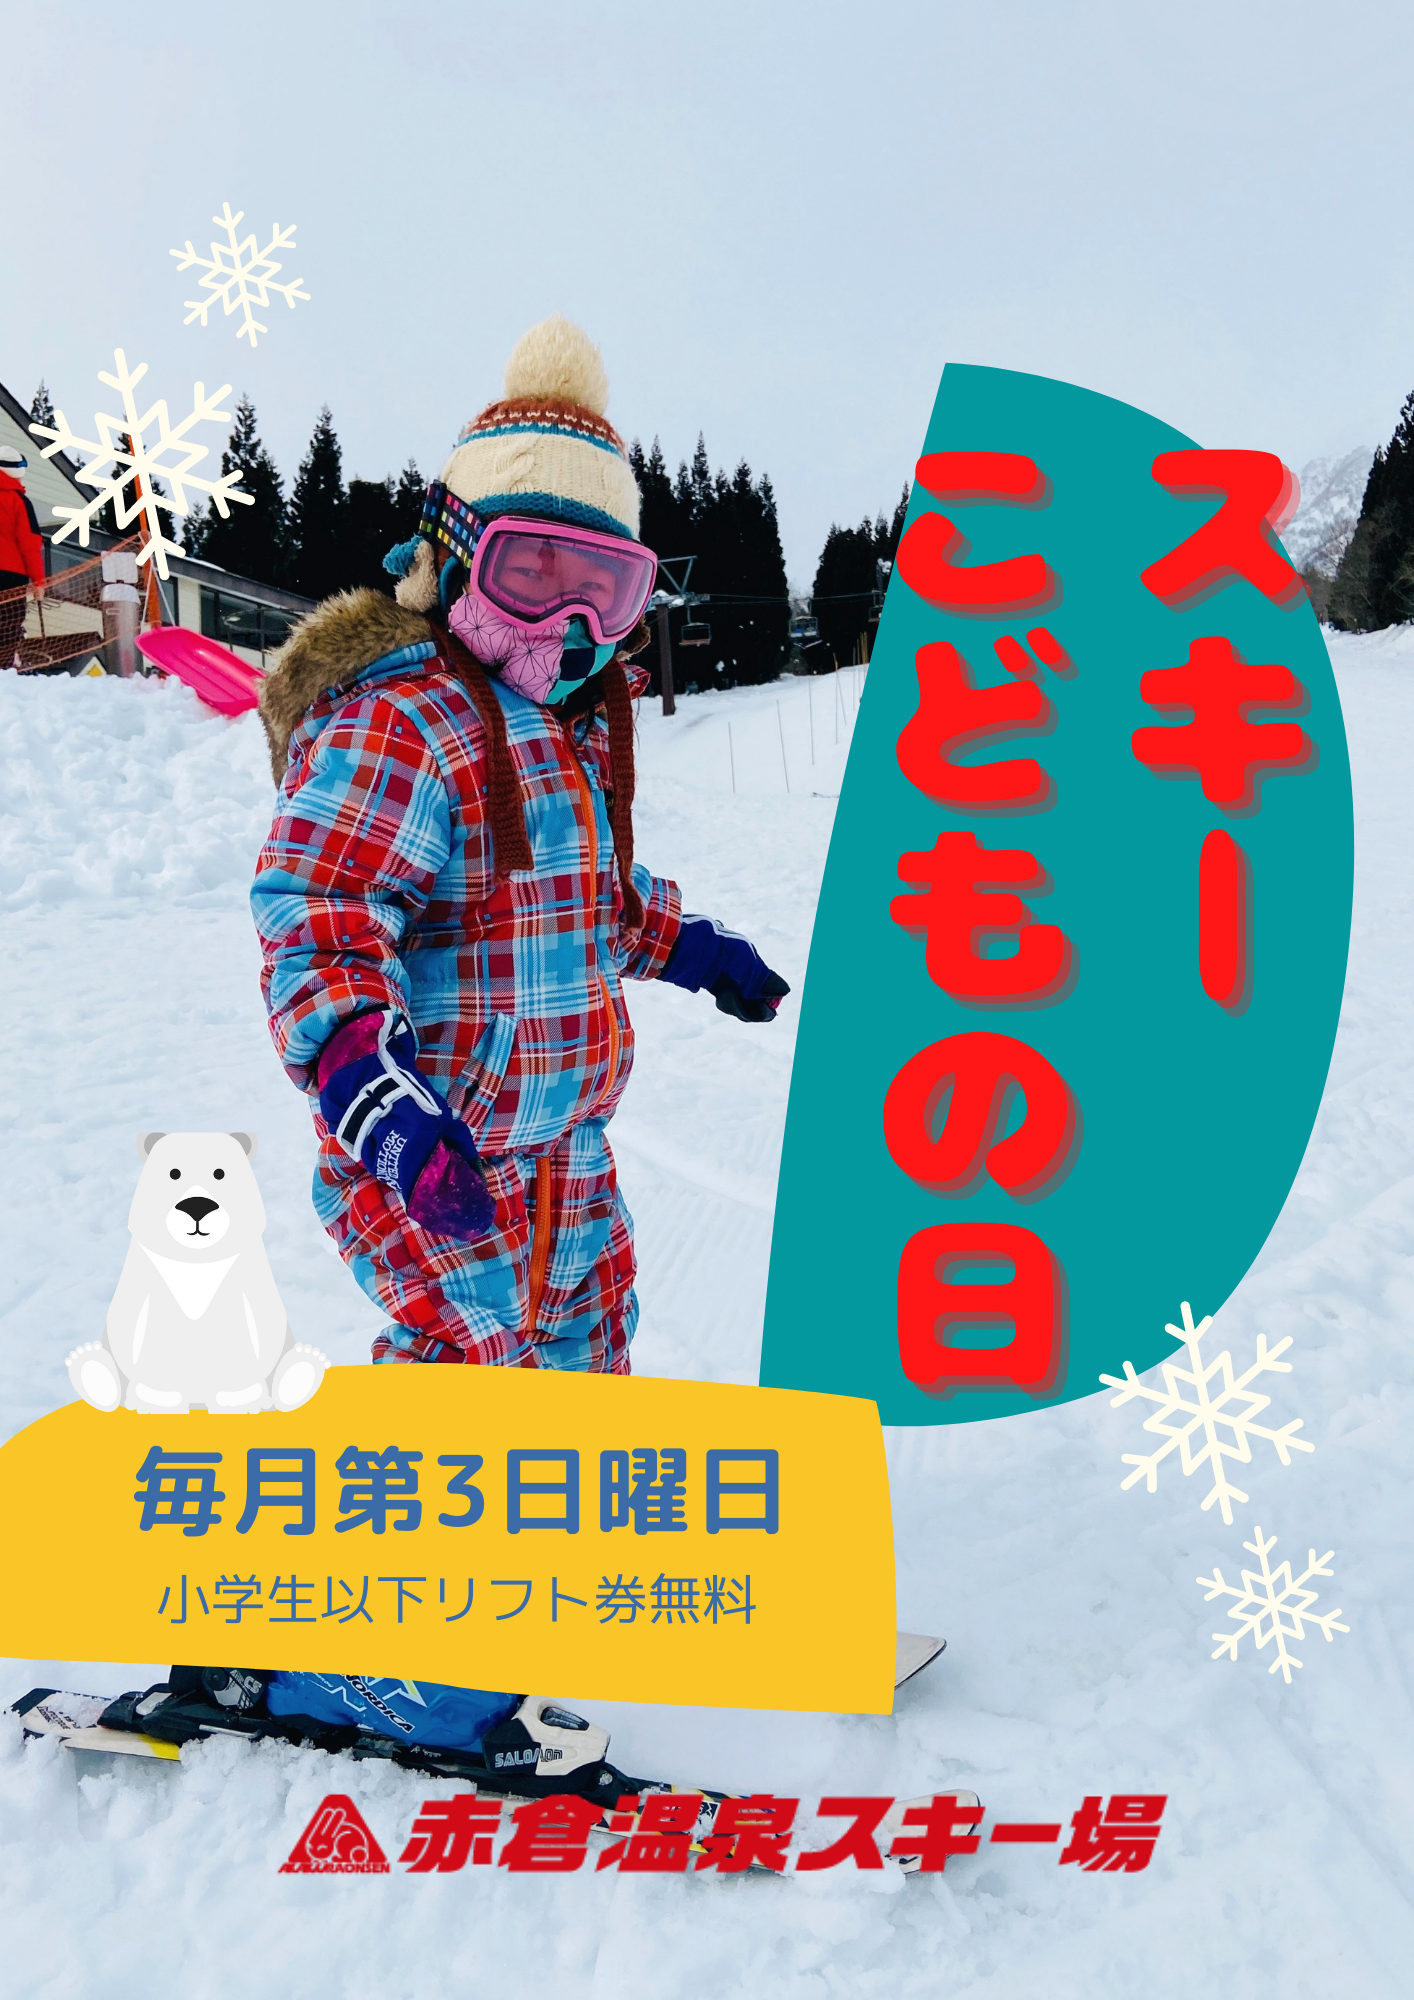 赤倉温泉スキー場 リフト券 大人2枚子供2枚 - スキー場